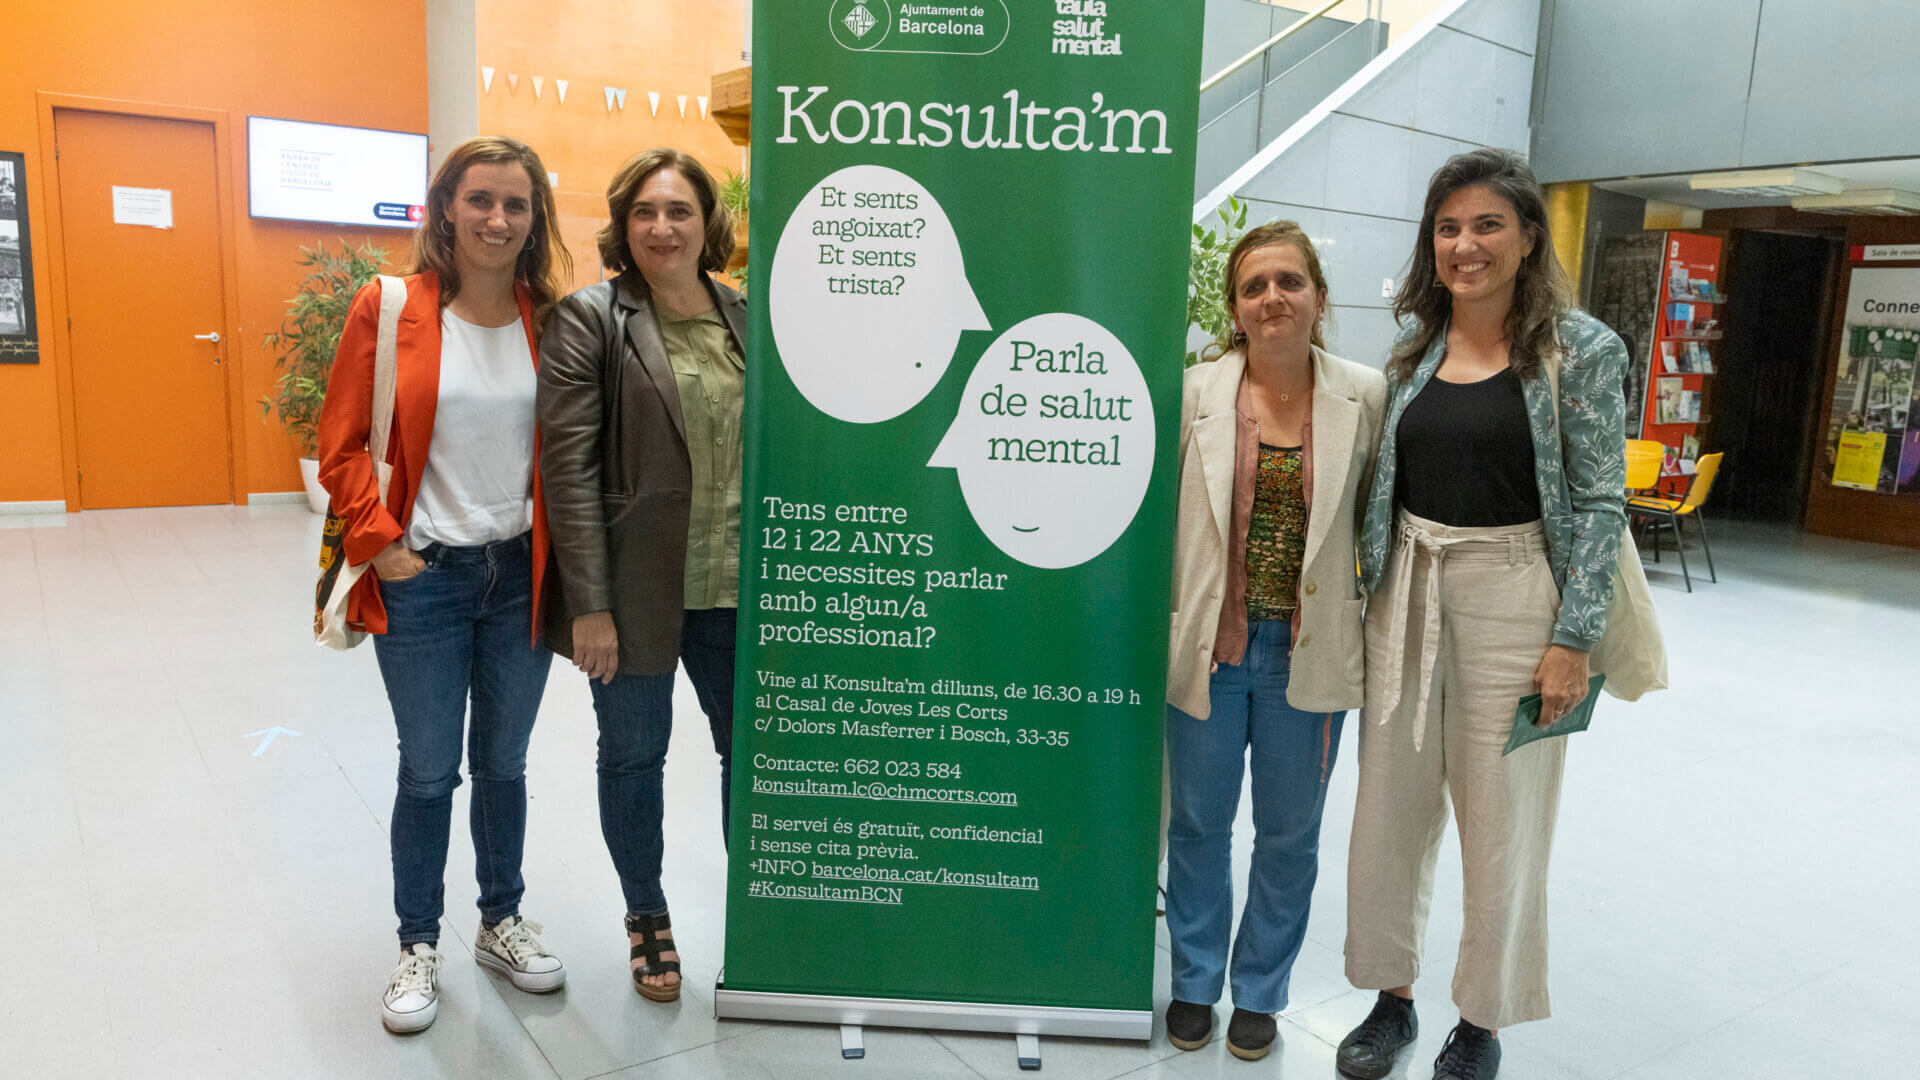 Mónica García, Ada Colau y Gemma Tarafa en una visita a un punto de apoyo a la salud mental en Barcelona llamado Konsulta'm